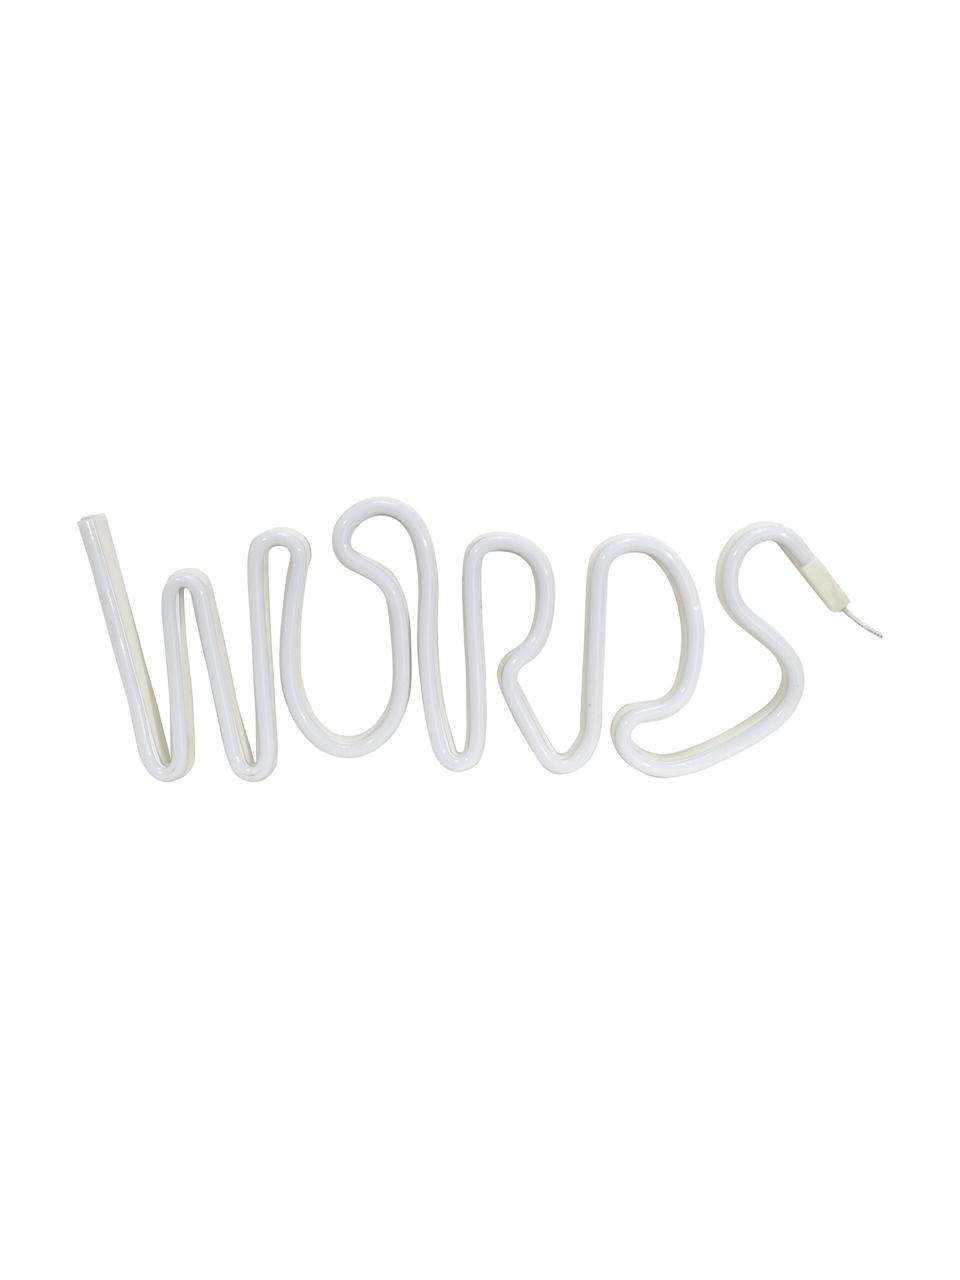 LED-Leuchtobjekt Words, Kunststoff, Weiß, 40 x 19 cm